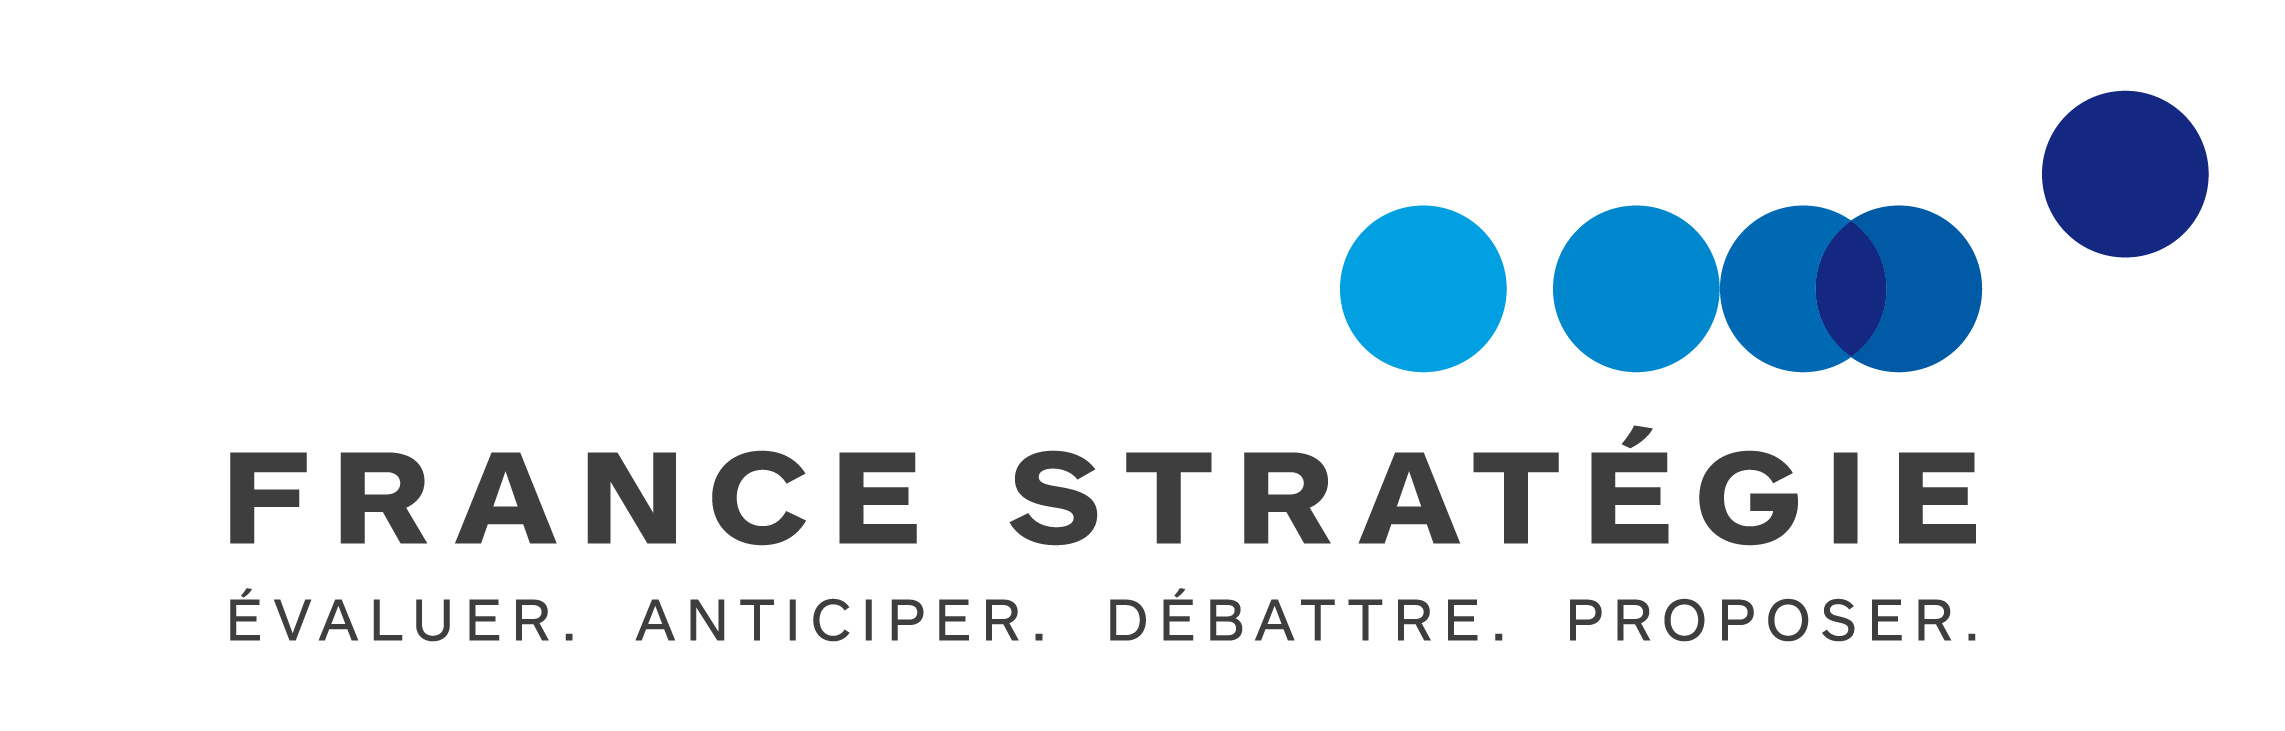 France Stratégie, la nouvelle identité du Commissariat général à la stratégie et à la prospective